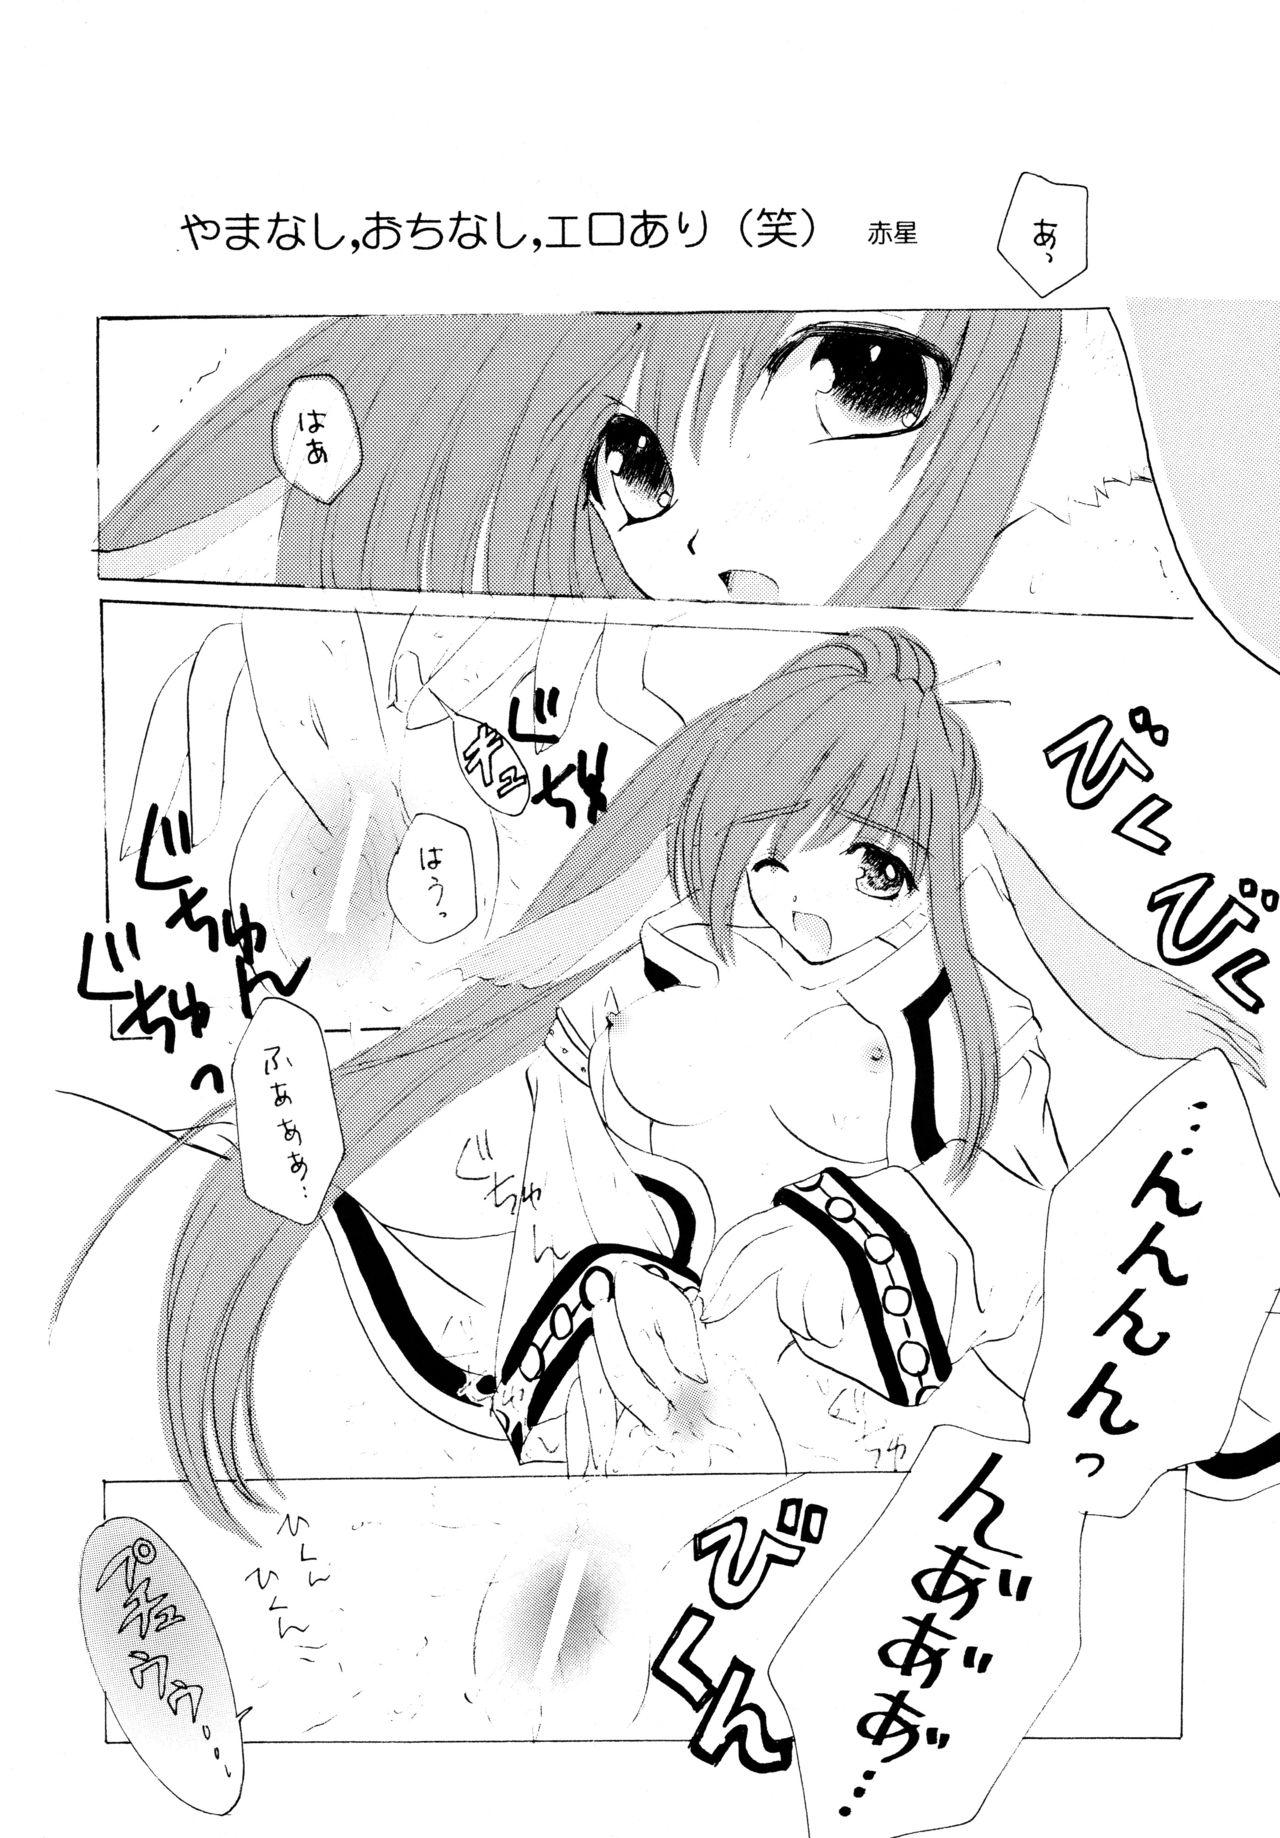 Groupfuck Tori no You ni Utainagara - Utawarerumono Storyline - Page 10